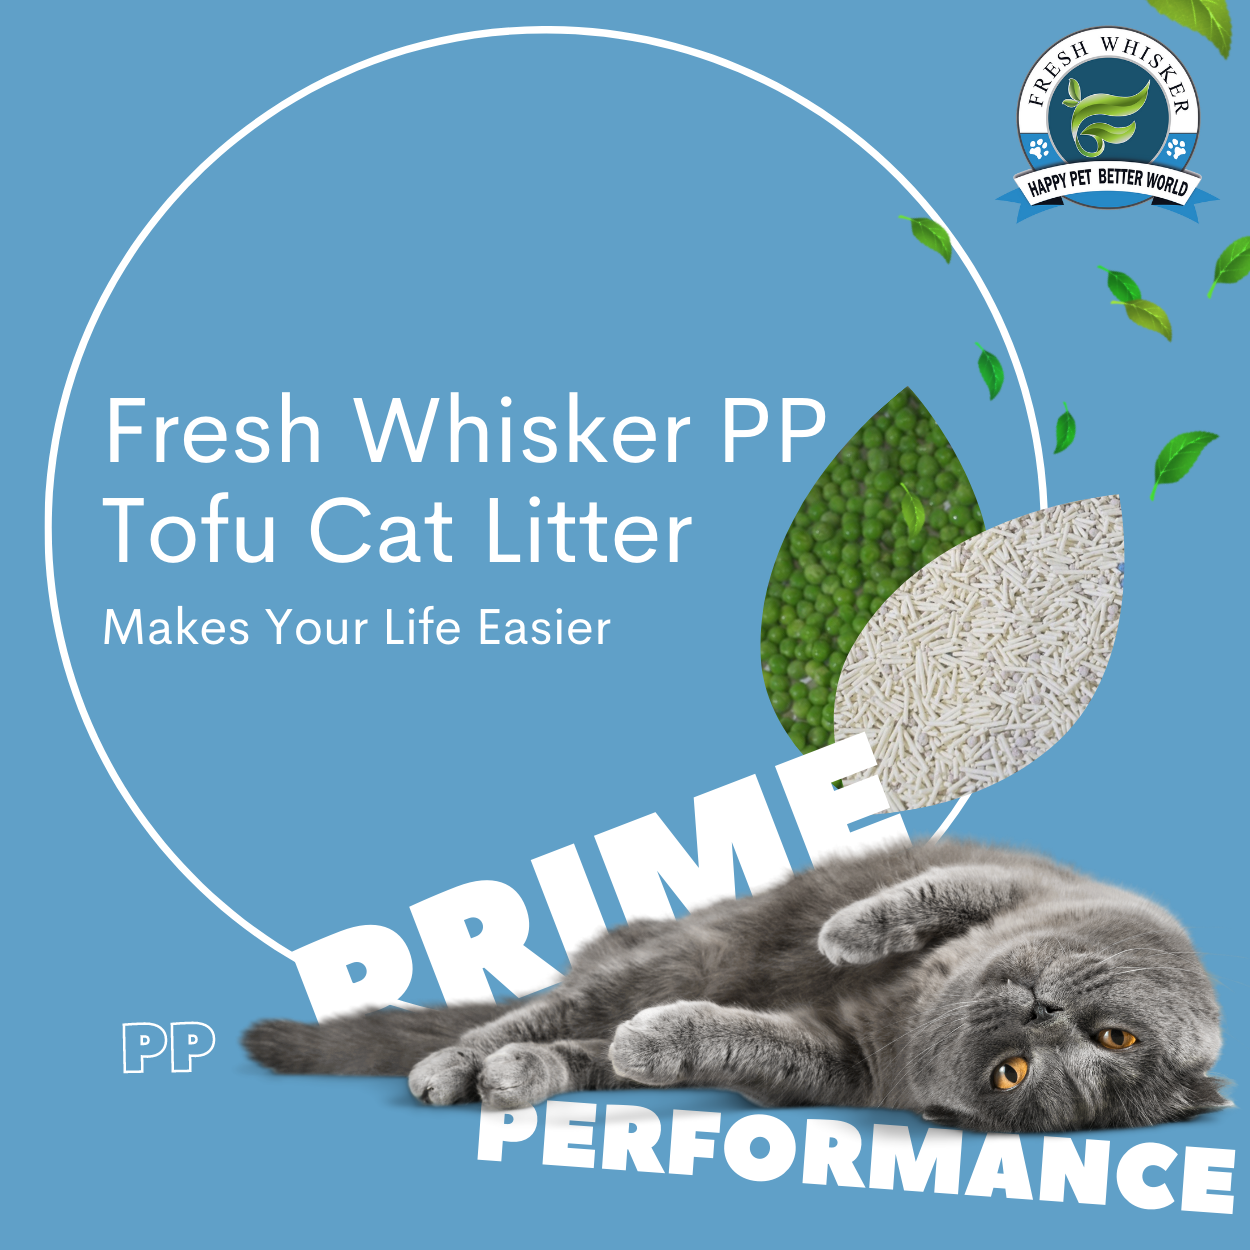 5 in 1 PP Tofu Cat Litter